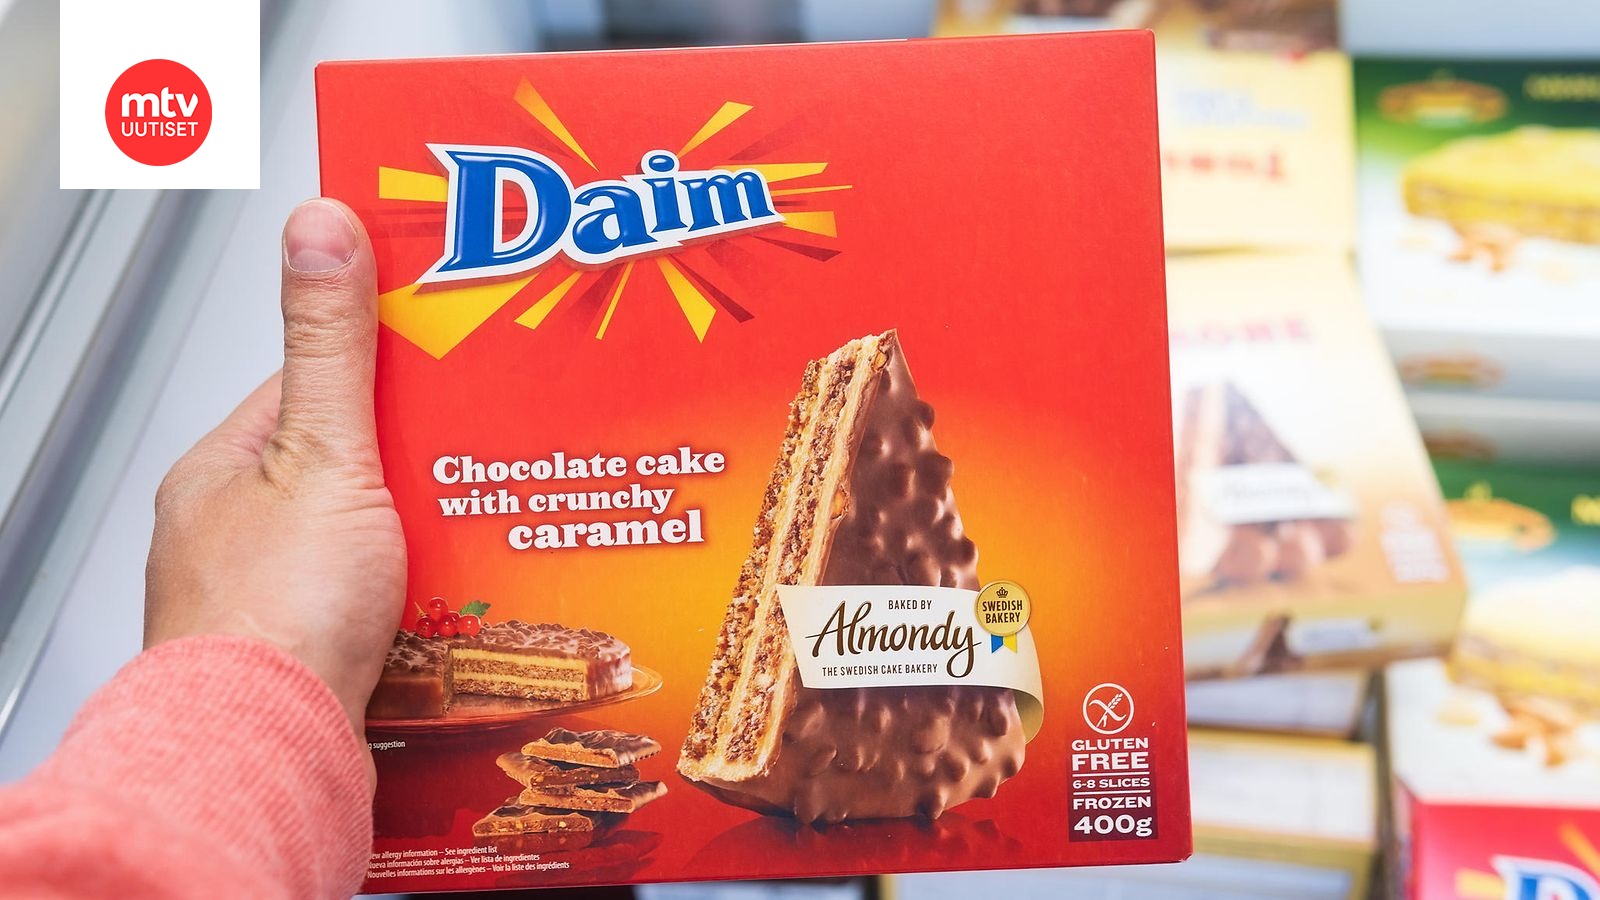 Takaisinveto: Almondyn Daim-kakkuja vedetään takaisin | Makuja | MTV Uutiset